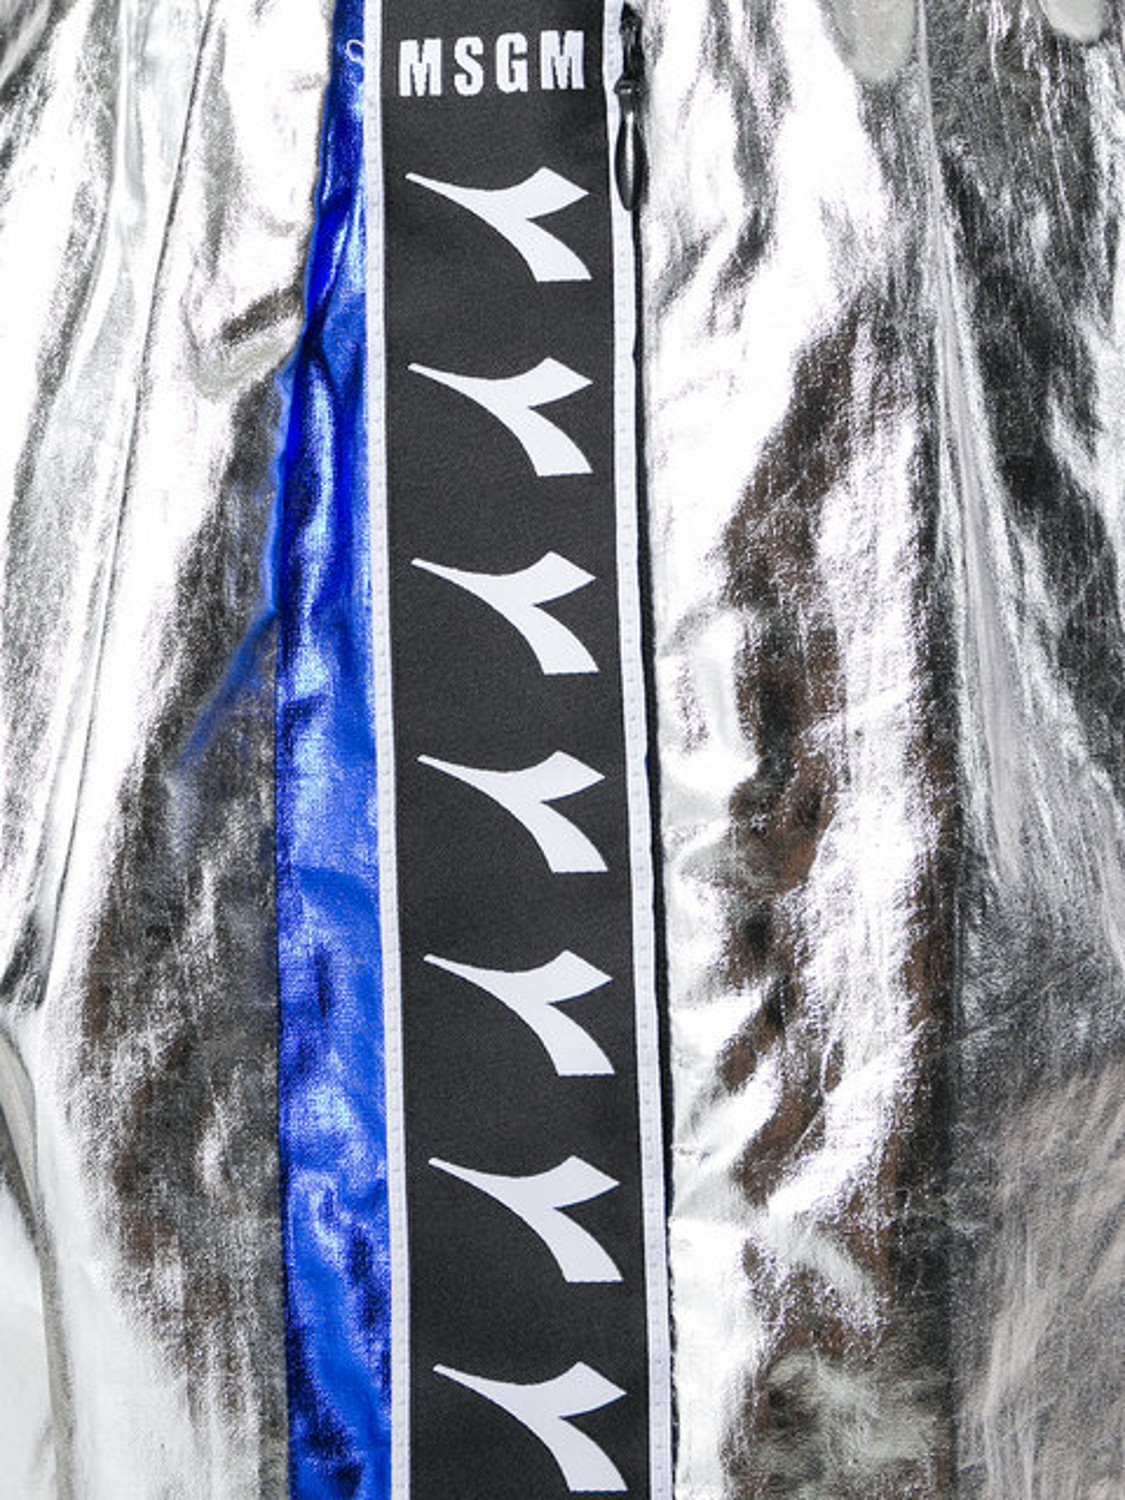 shop MSGM Sales Pantaloni: Pantaloncino MSGM in collaborazione con Diadora, color argento con bande laterali in blu e nero, tasche laterali con zip.

Composizione: 80% cotone, 20% poliuretano. number 1247